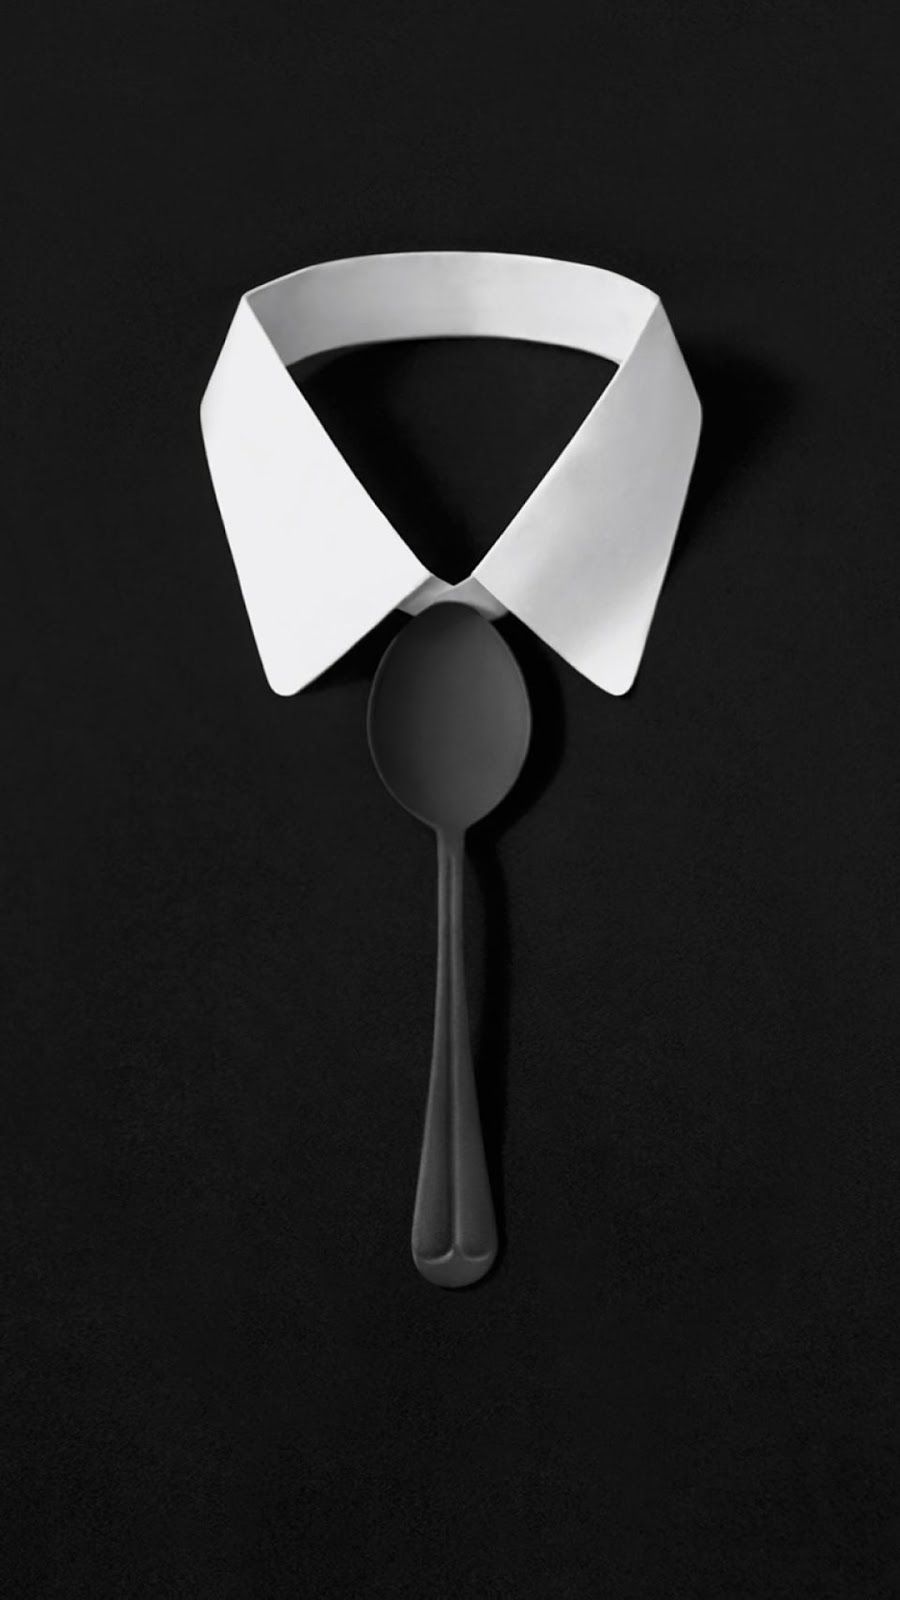 Dark Simple Suit Spoon Tie Simple iPhone 7 and iPhone 7 Plus HD Wallpaper iPhone 7 & iPhone 7 Plus Wallpaper